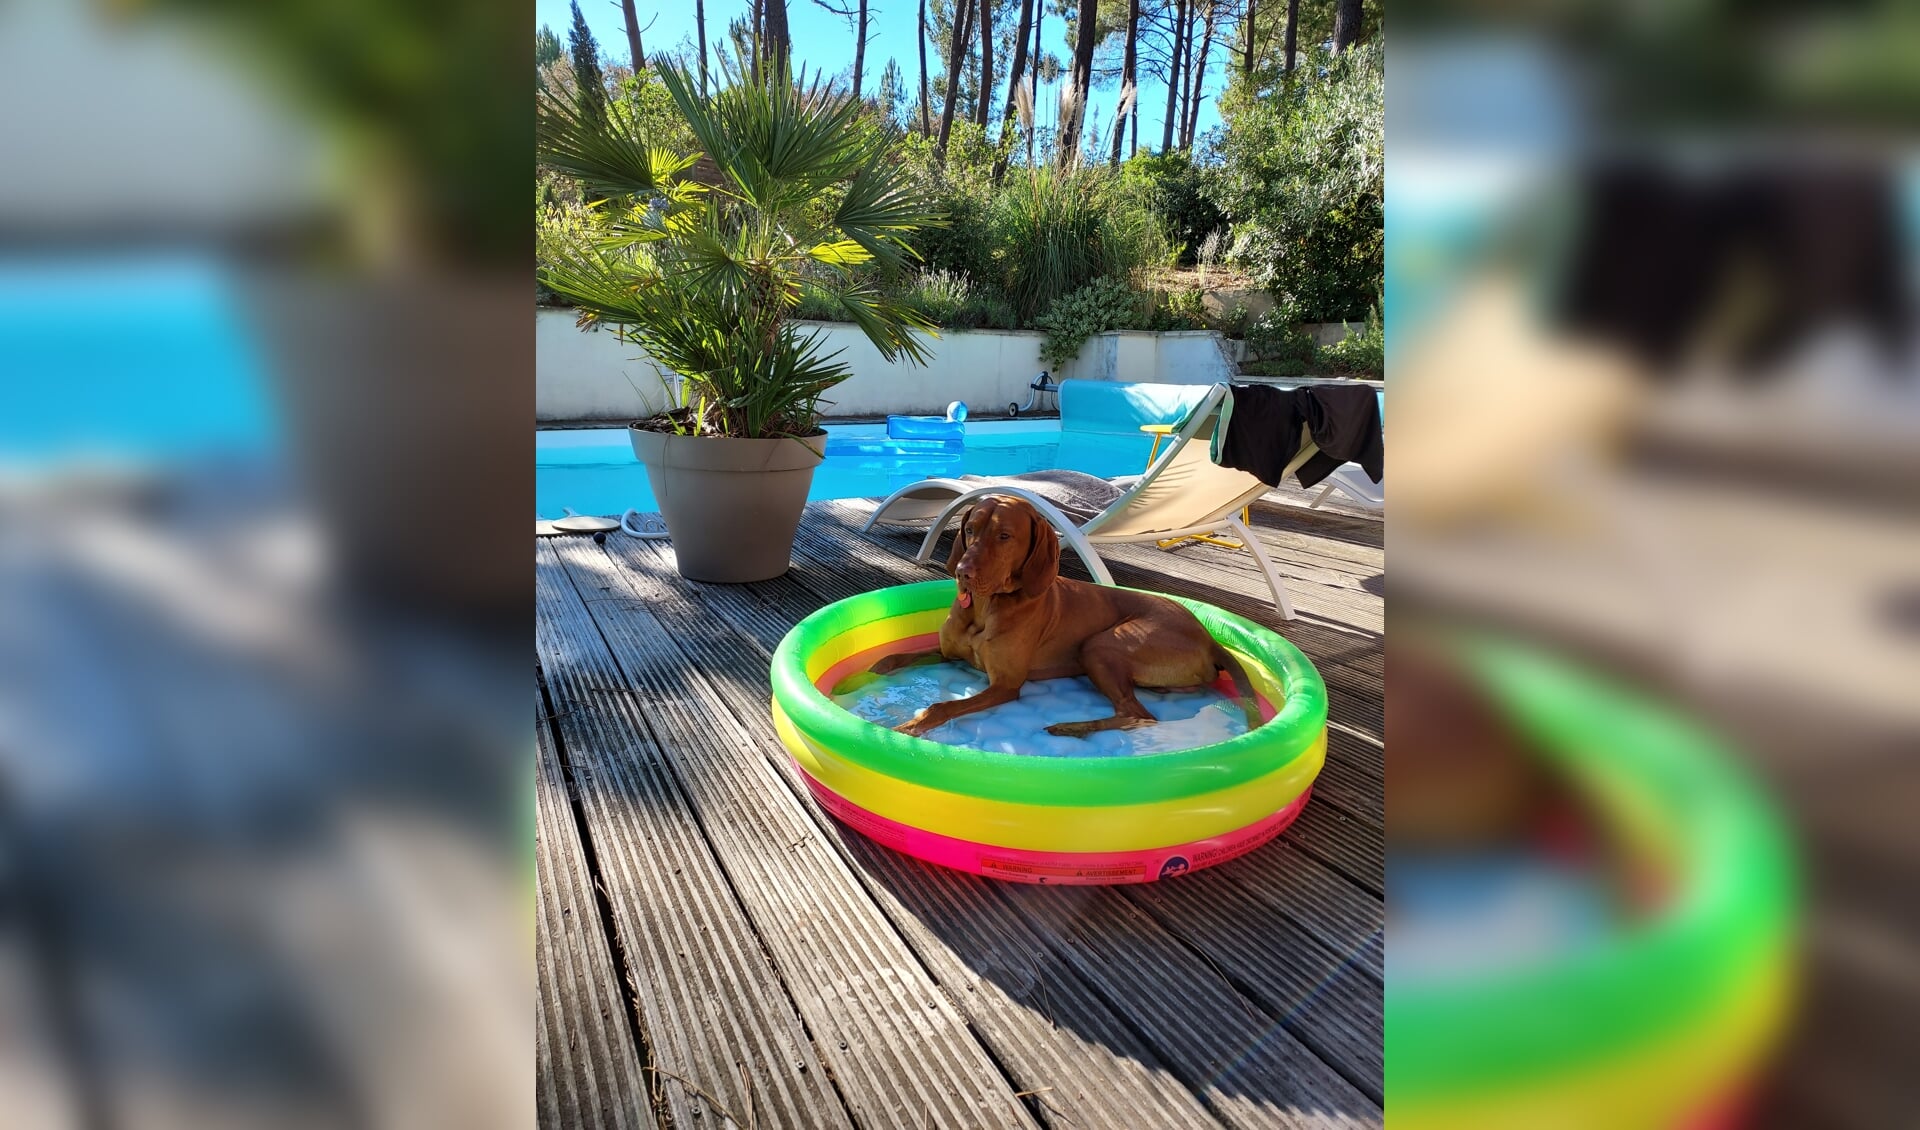 Ons vakantiehuis in Lacanau-ocean deze zomervakantie, hier was het soms heel warm. Dus niet alleen wij zochten de verkoeling van het zwembad. Onze hond Hicky kon ook genieten van zijn zwembadje.